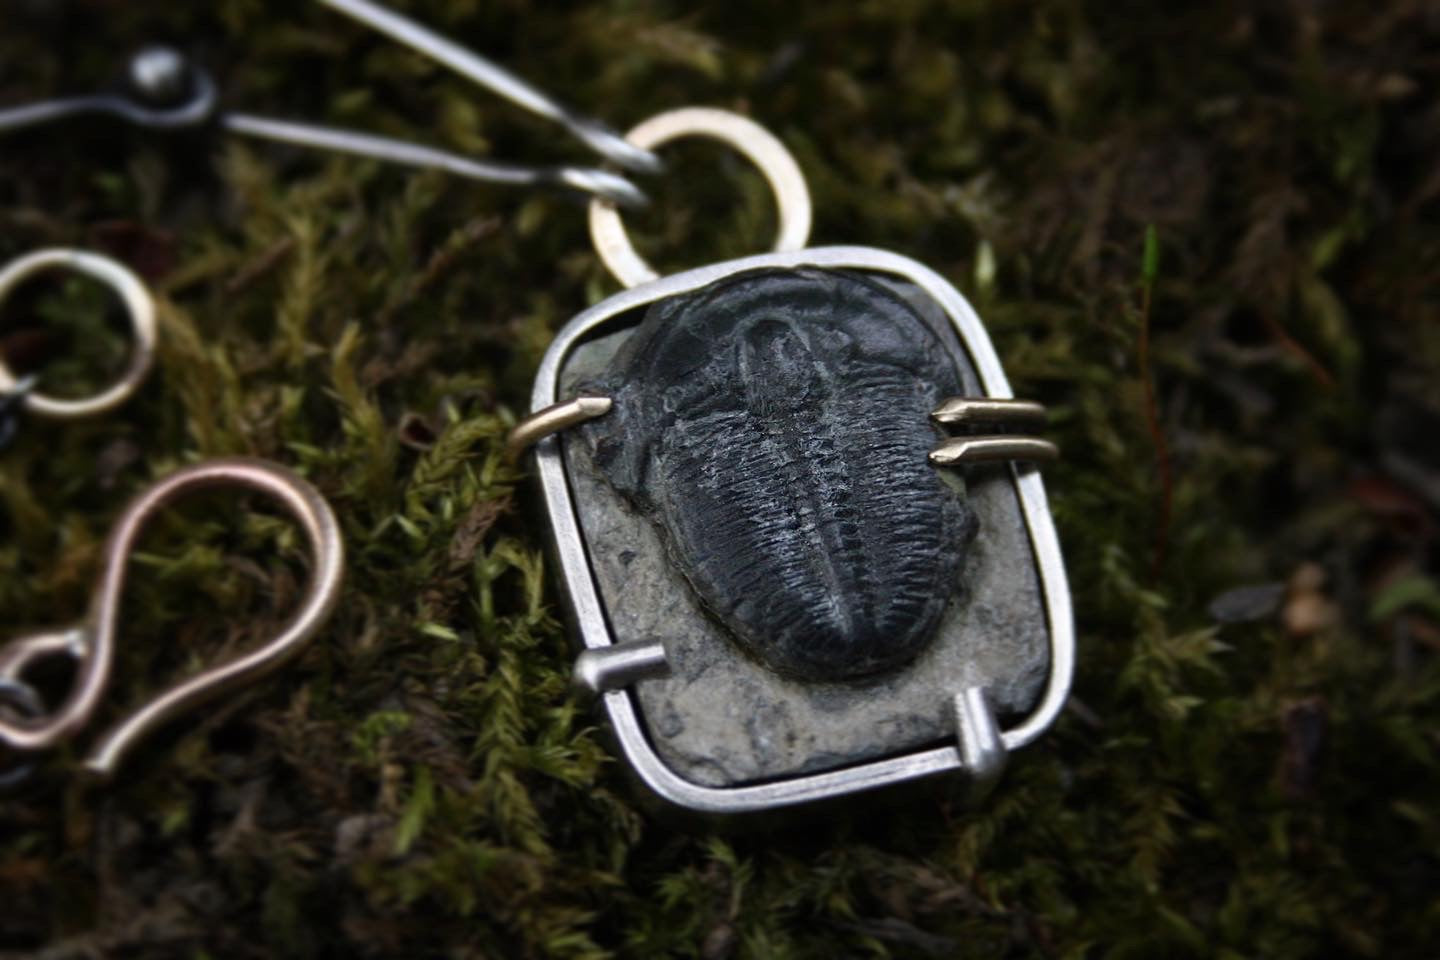 Trilobite Necklace